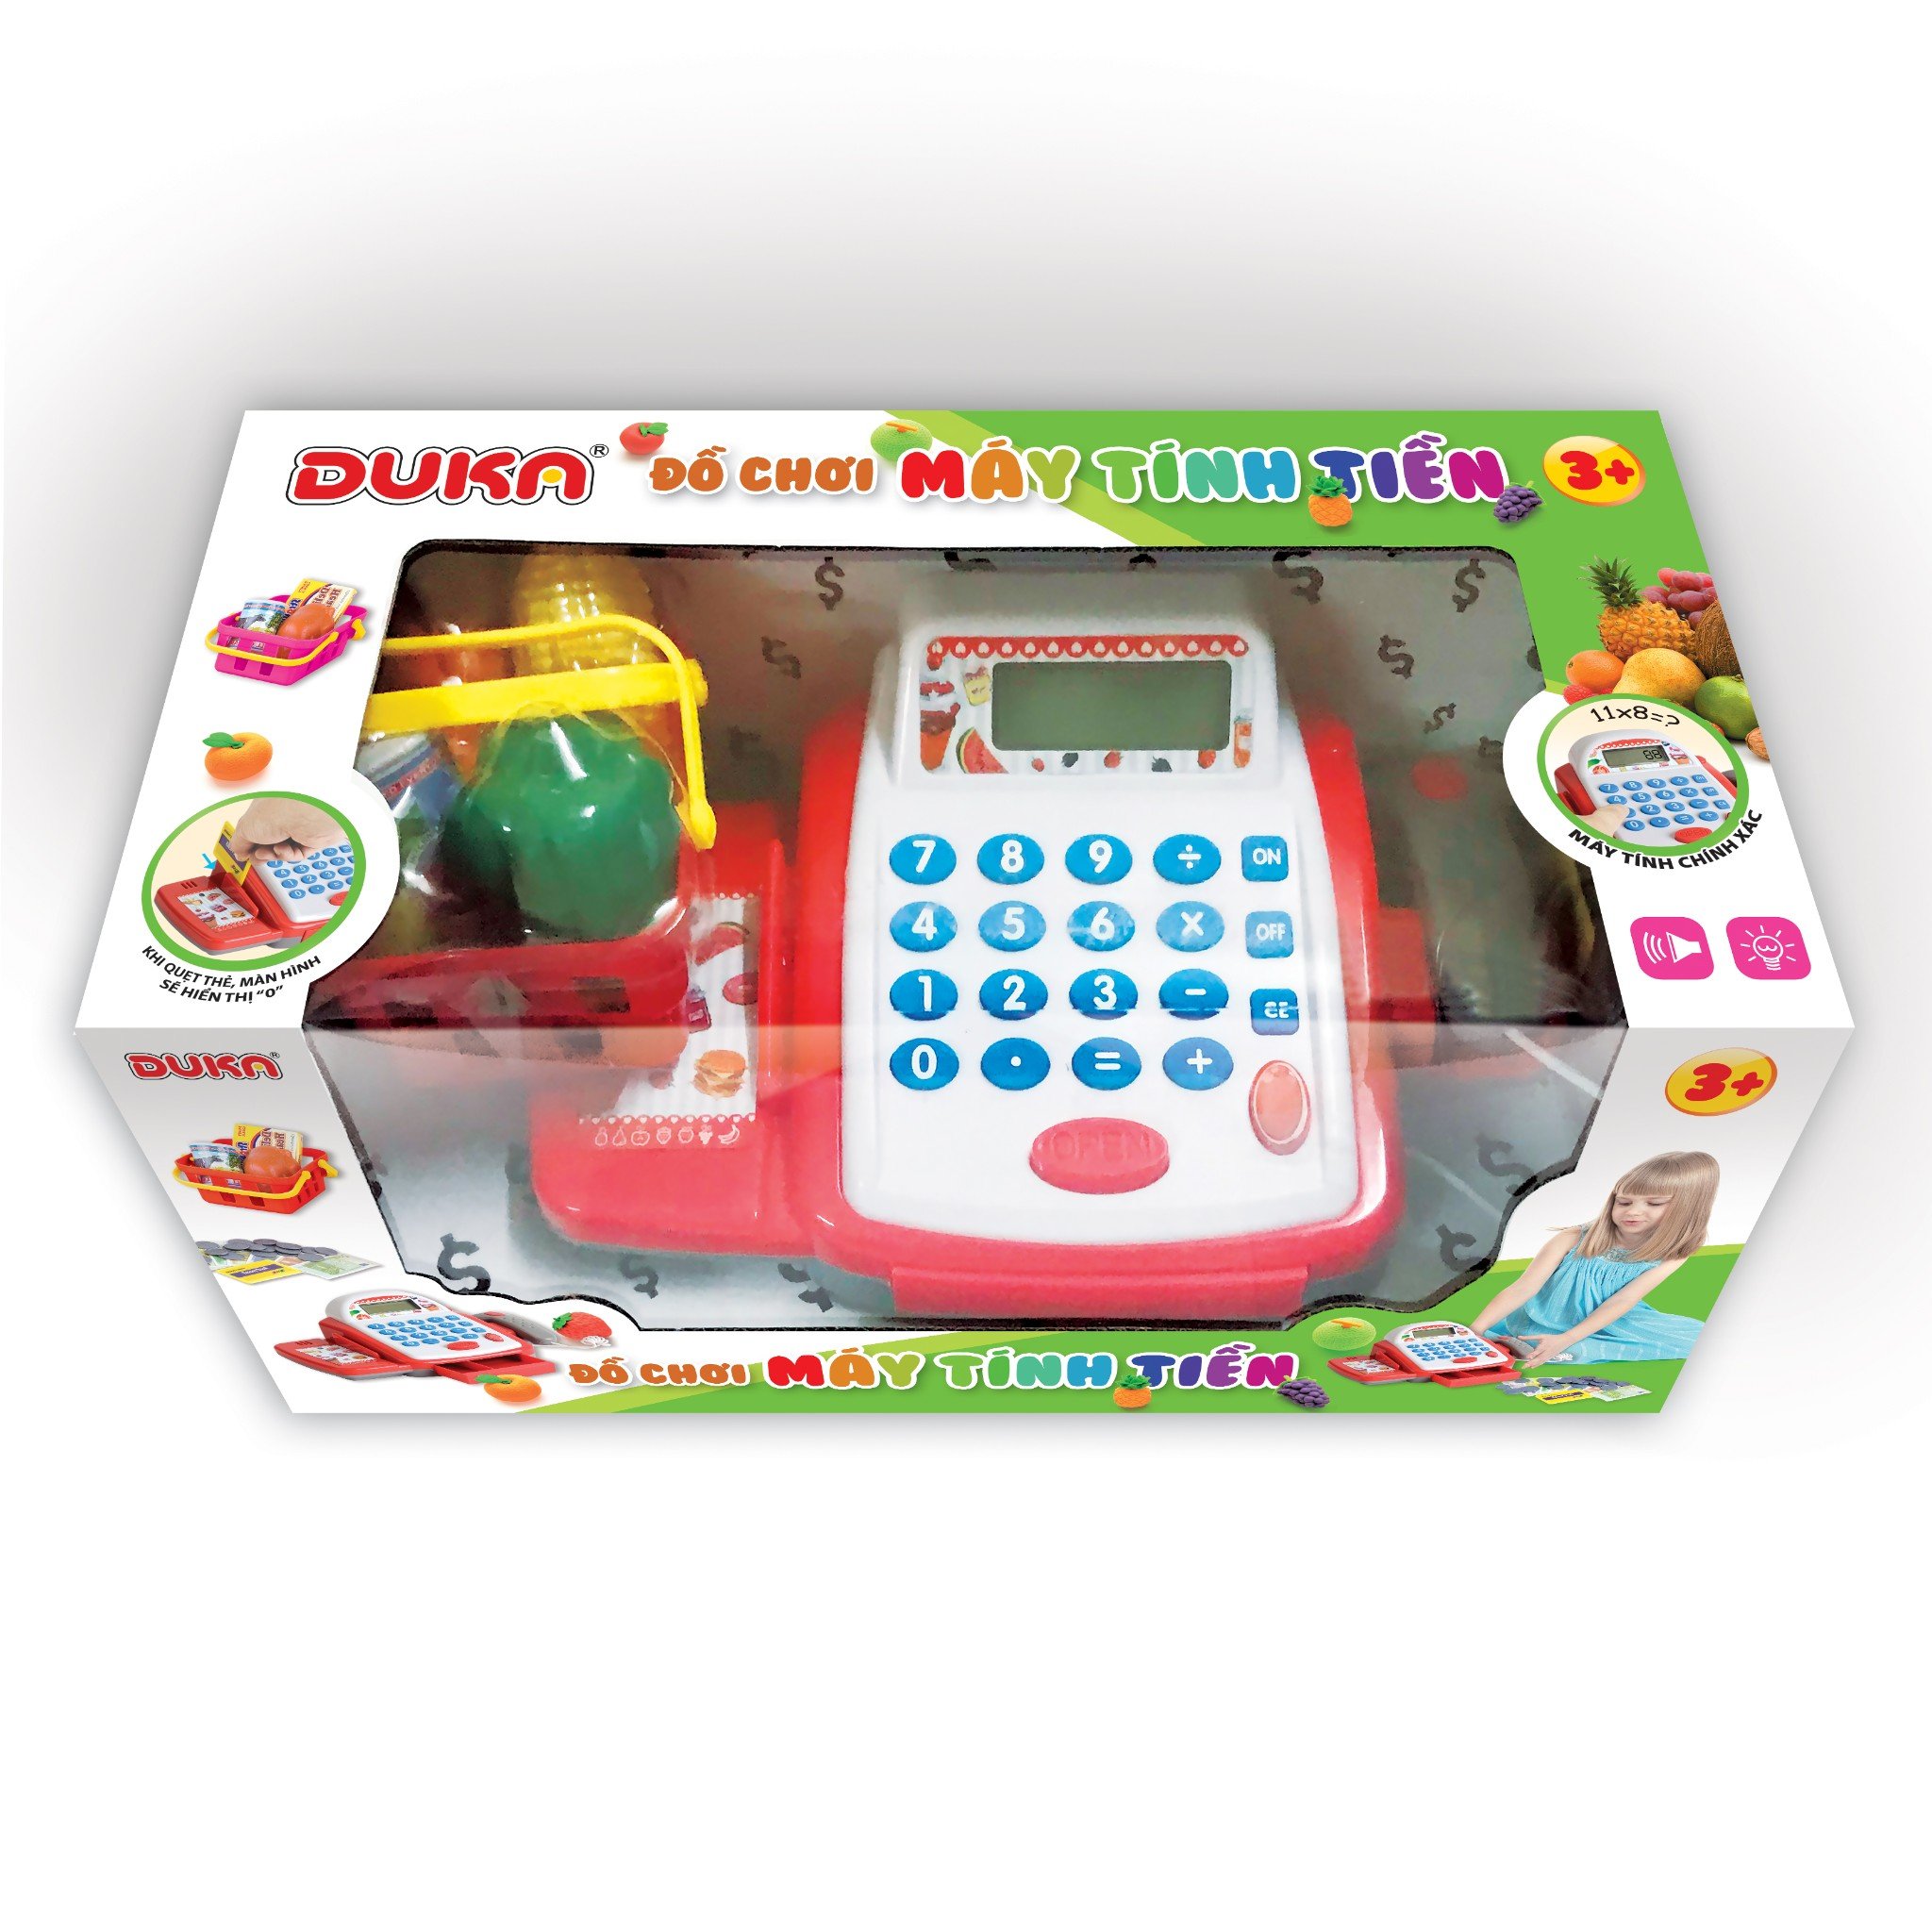 Bộ đồ chơi máy tính tiền màu đỏ, hiển thị màn hình, có đèn và âm thanh báo.